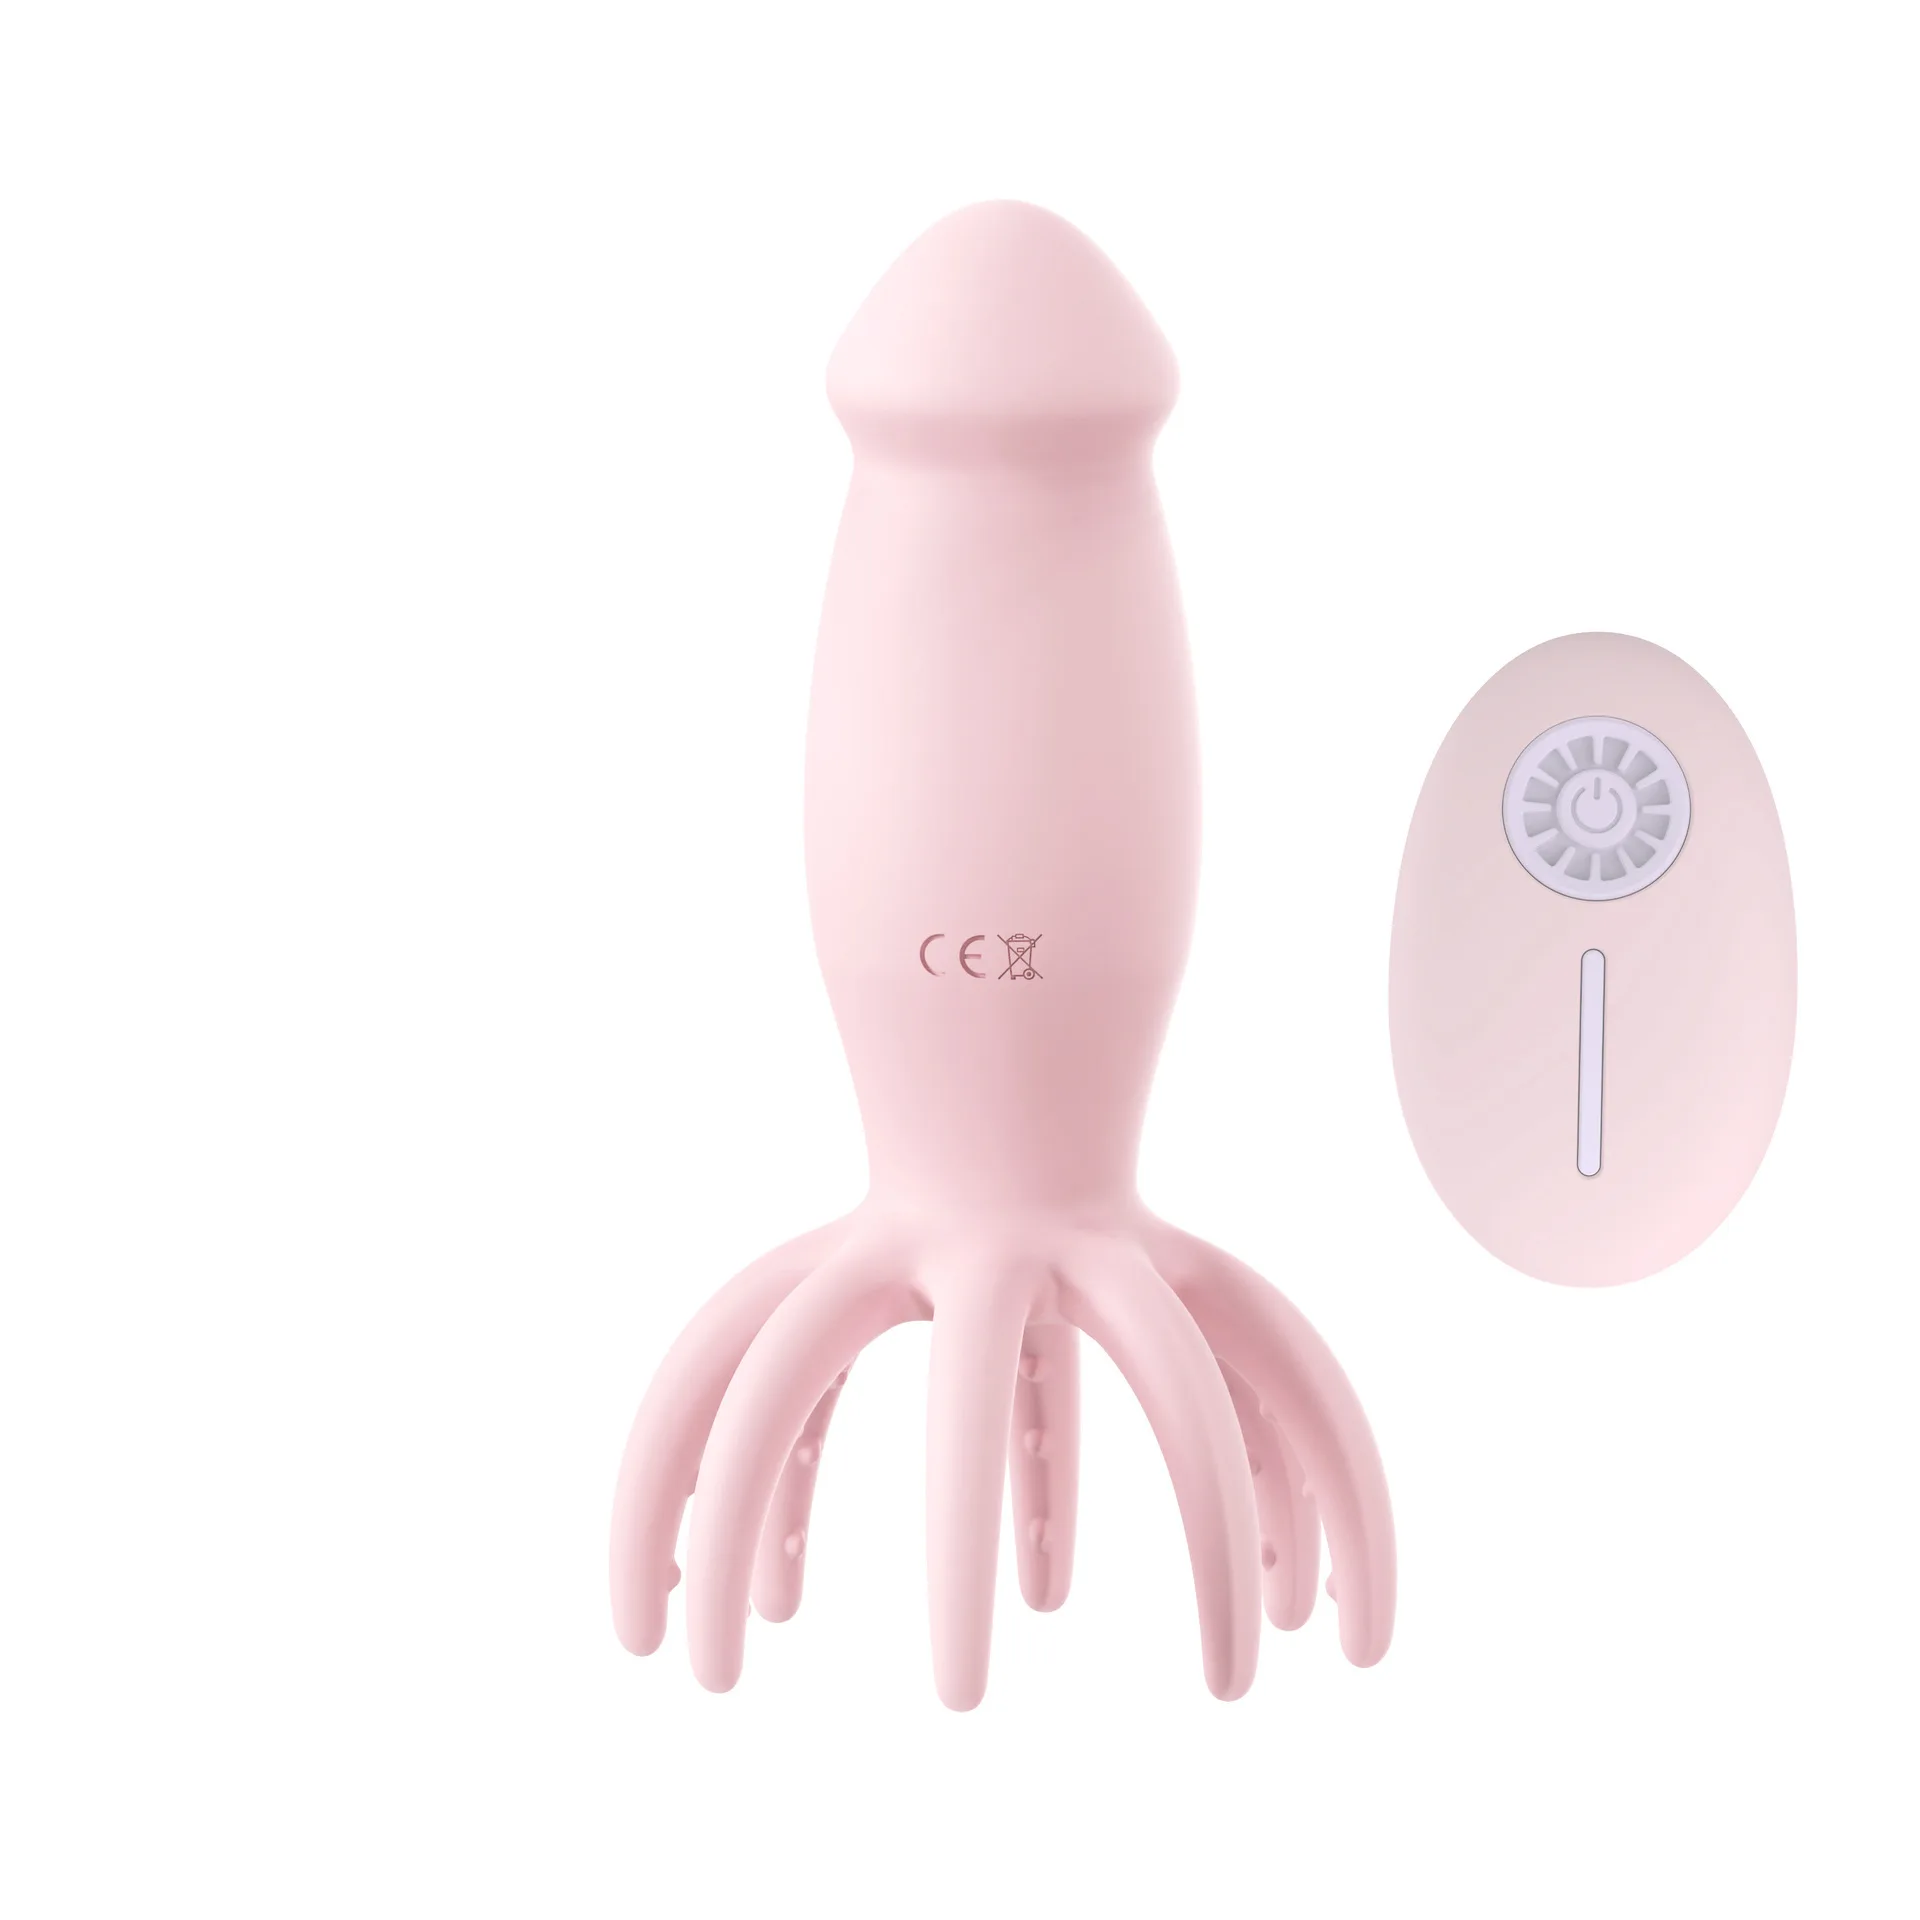 Octopus chest massage female masturbator remote control